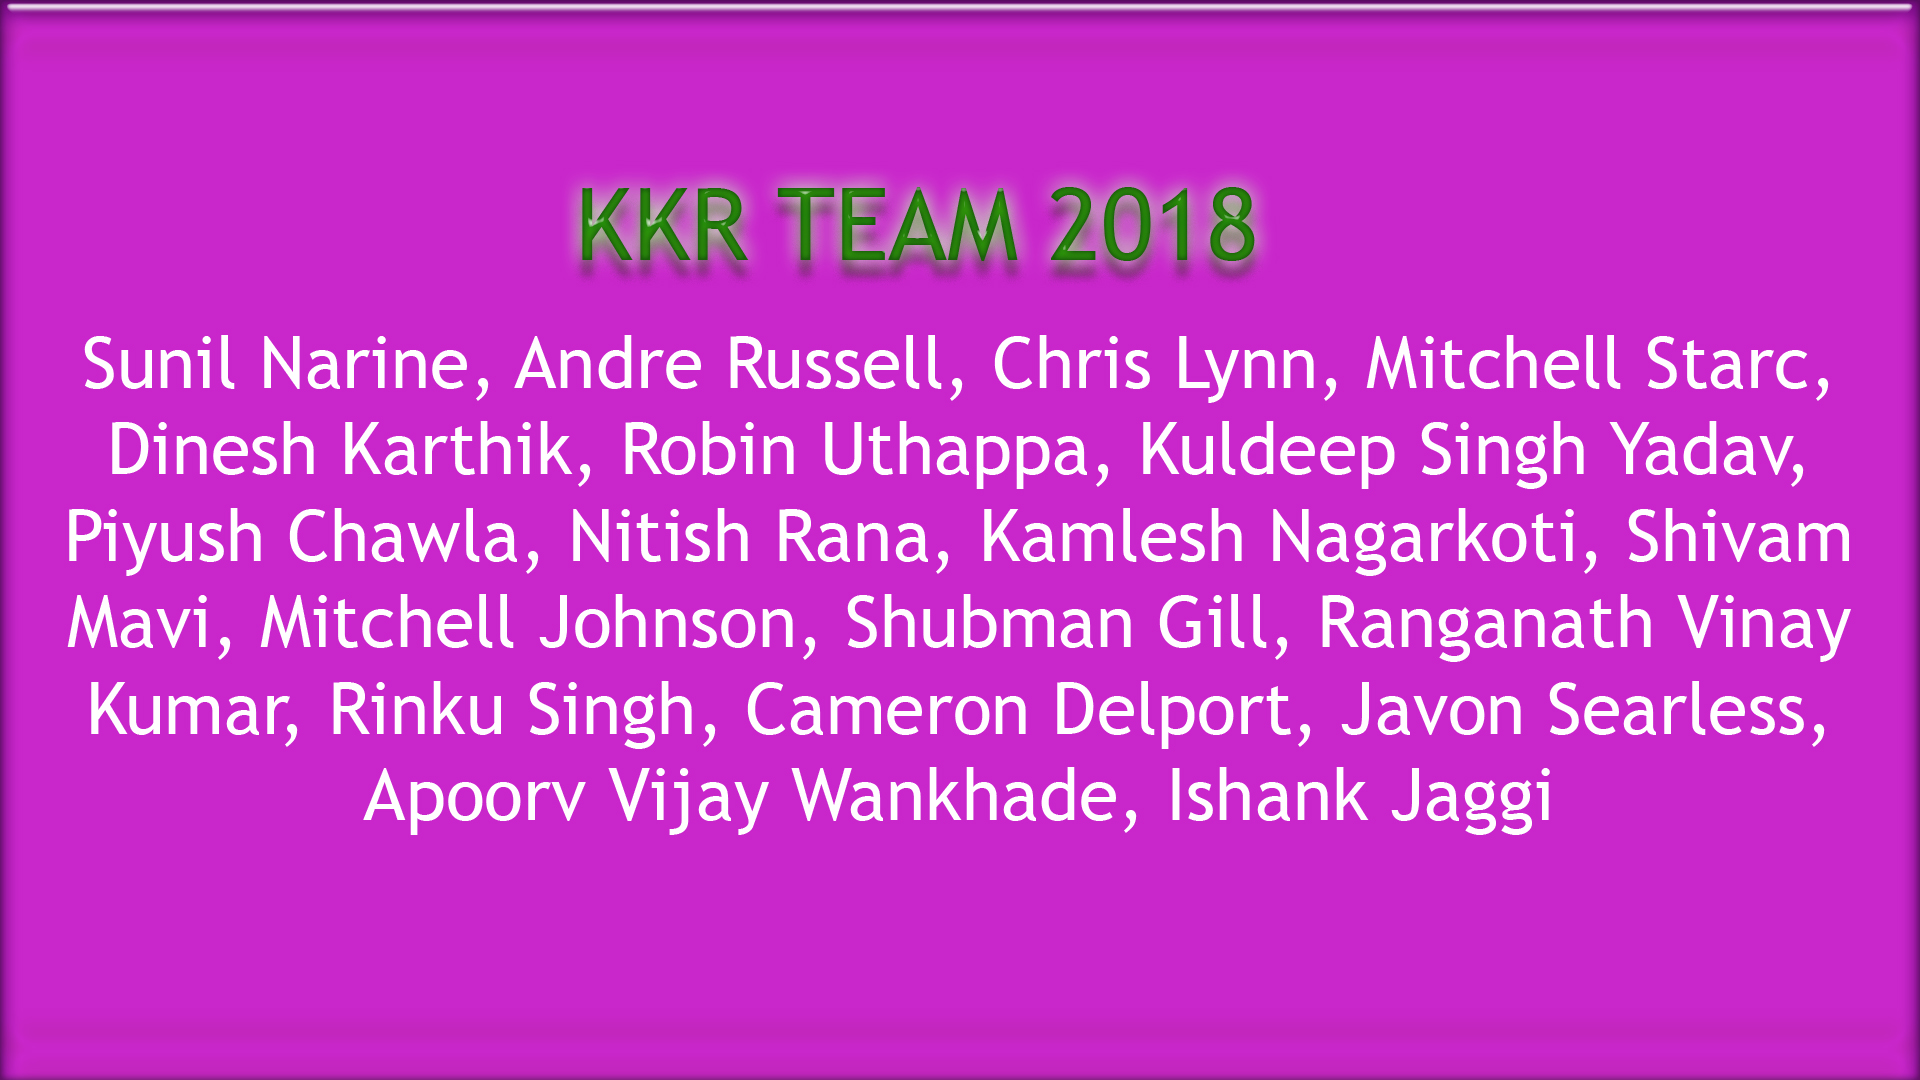 kkr team image 2018